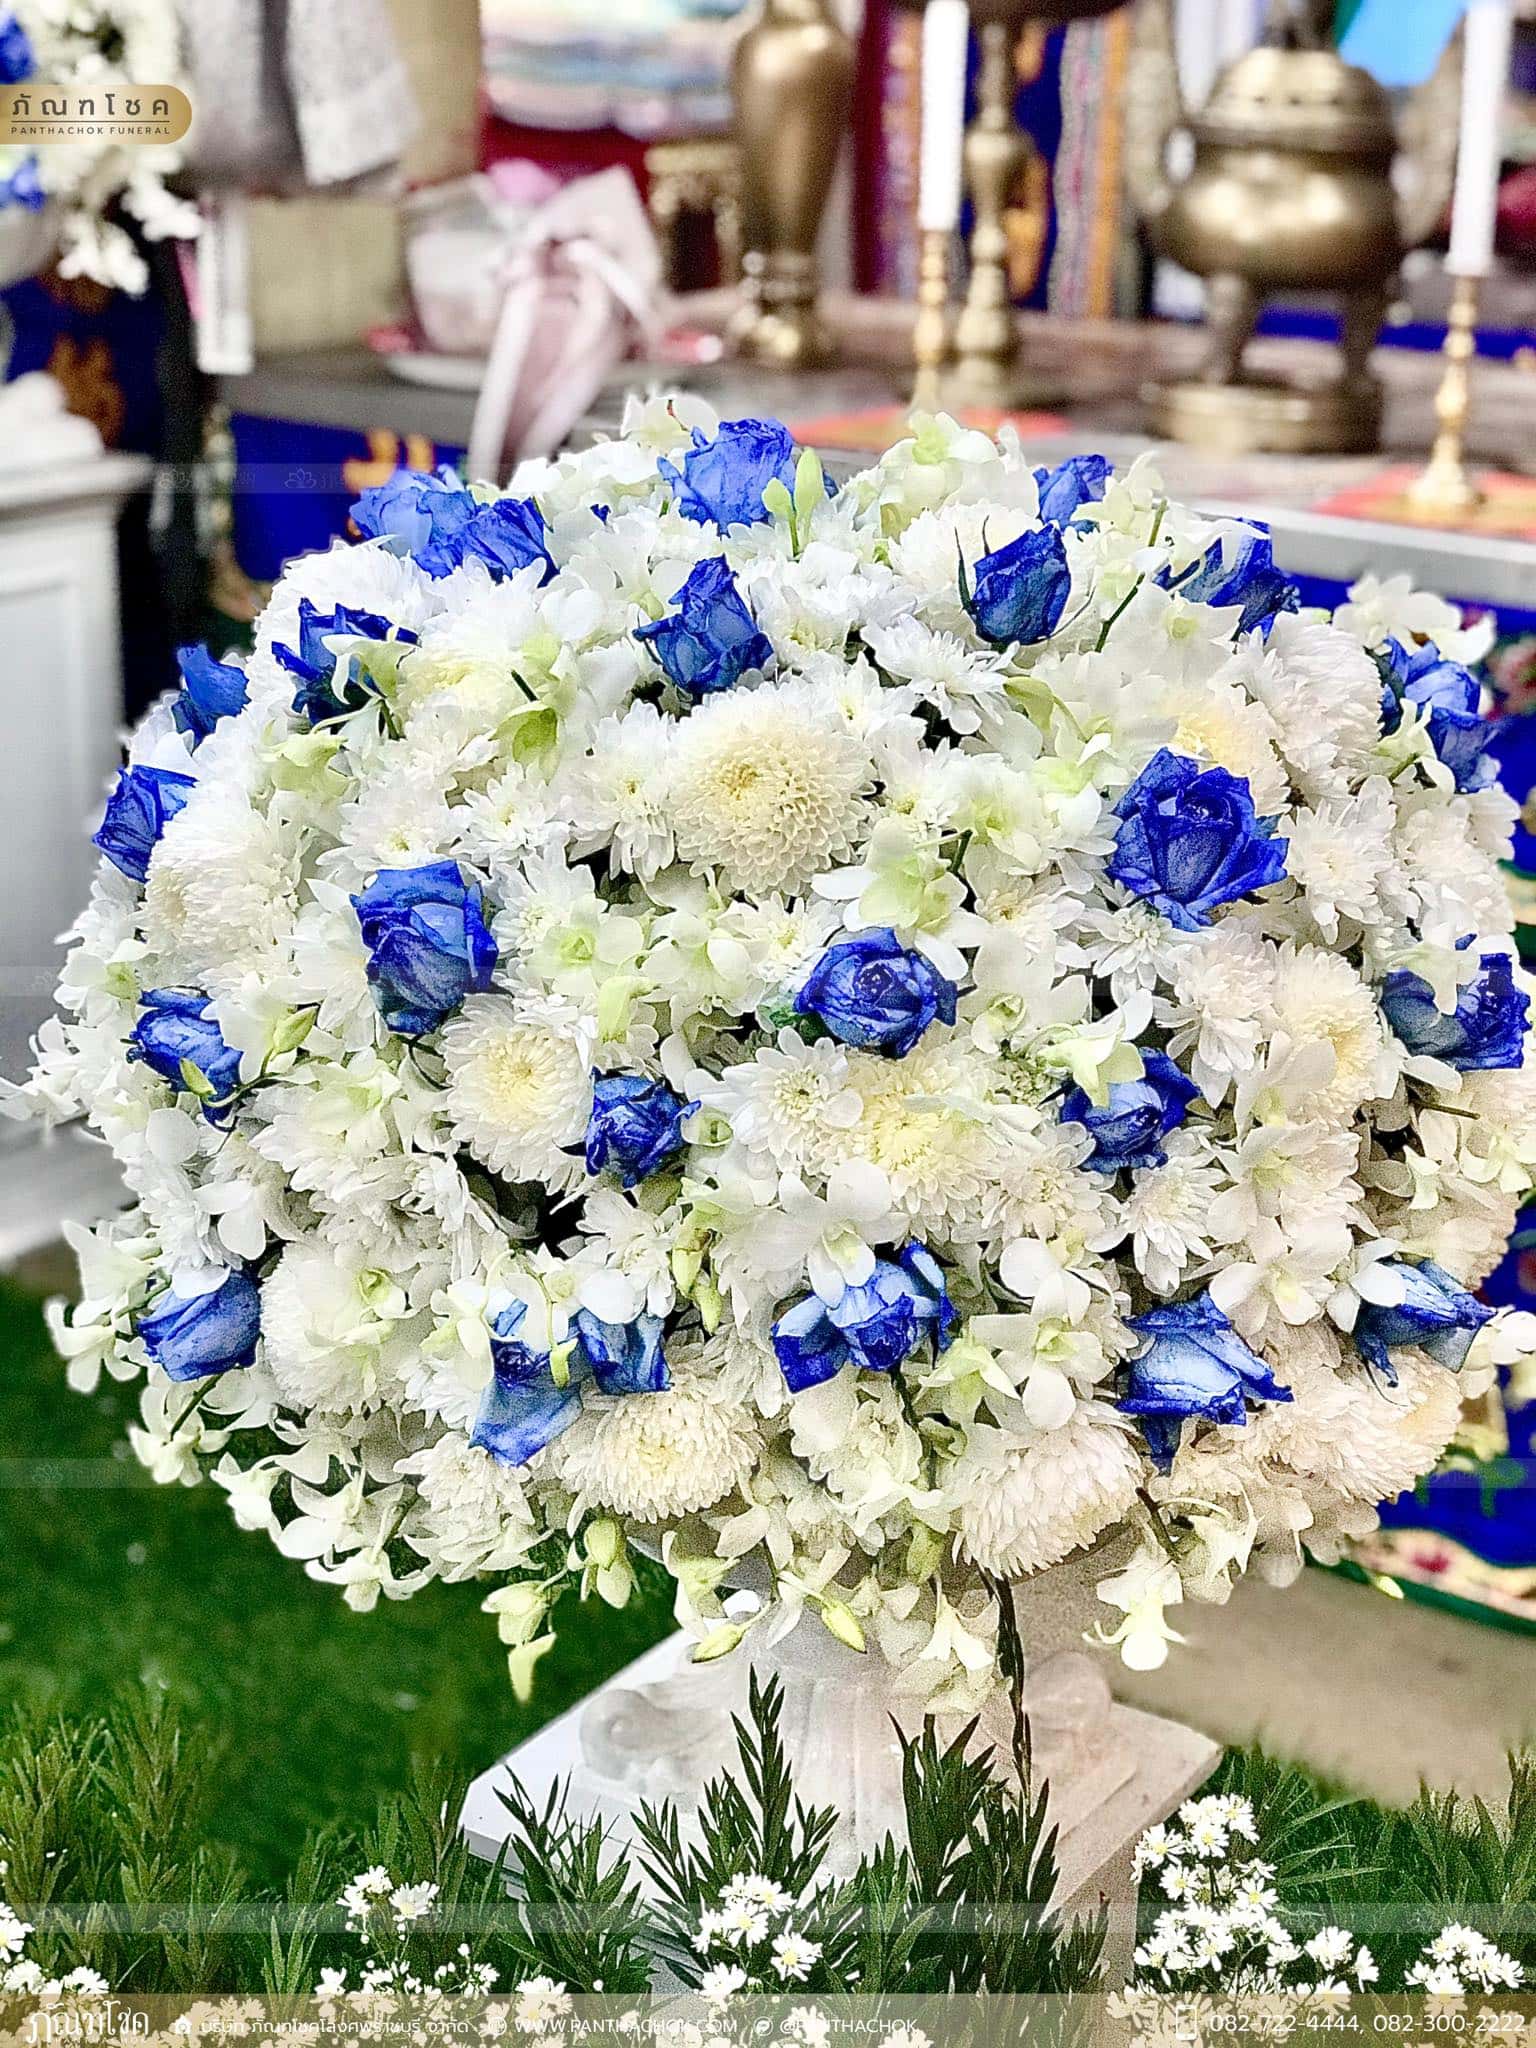 ชุดดอกไม้งานศพ วัดเทพศิรินทราวาส ราชวรวิหาร 10